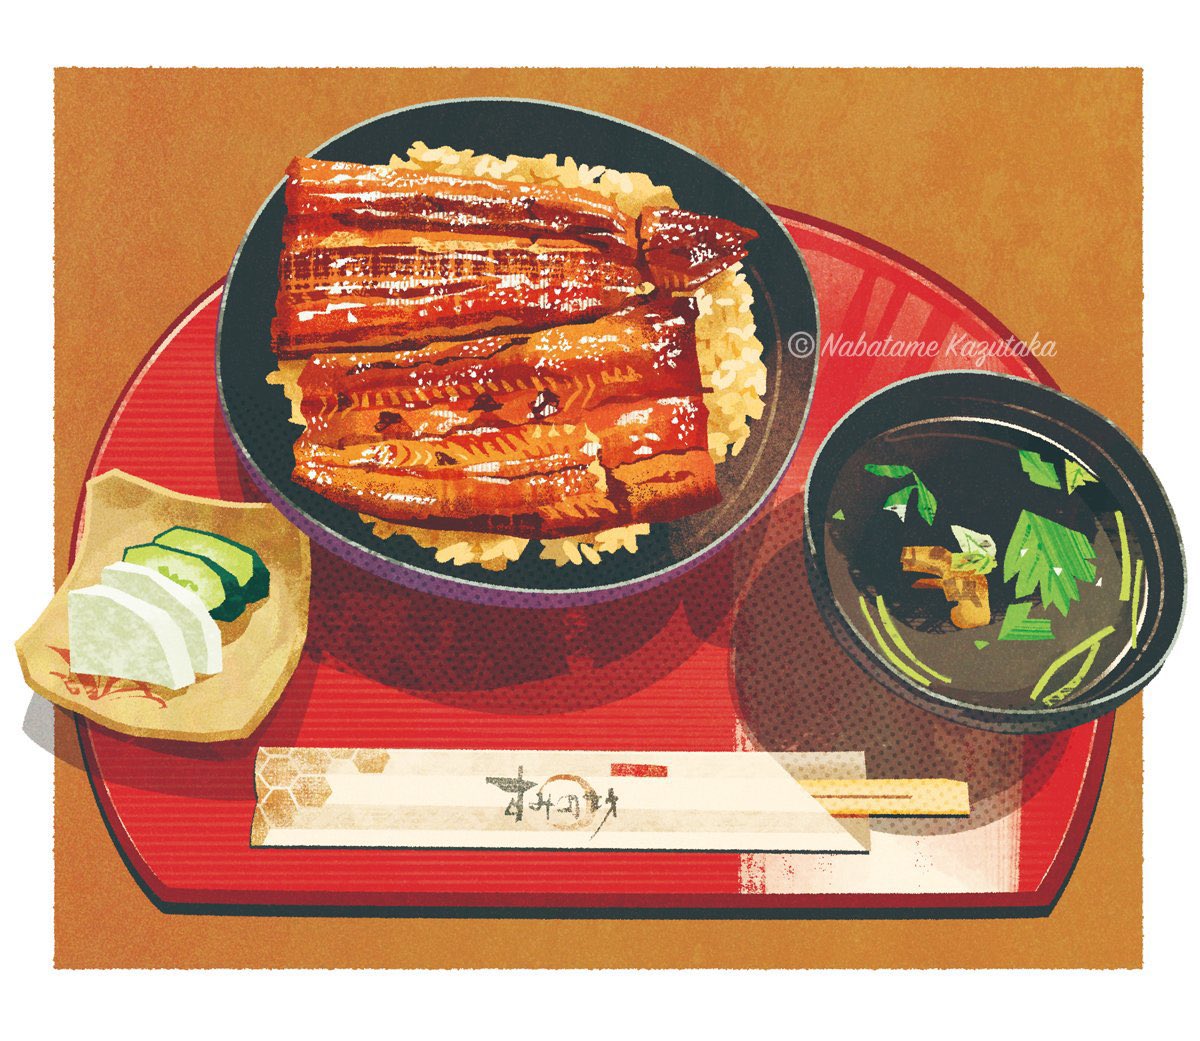 「前に描いたうな丼です。三島大社前の「すみの坊」で頂きました。美味。 」|生田目 和剛 (ナバタメ・カズタカ)のイラスト